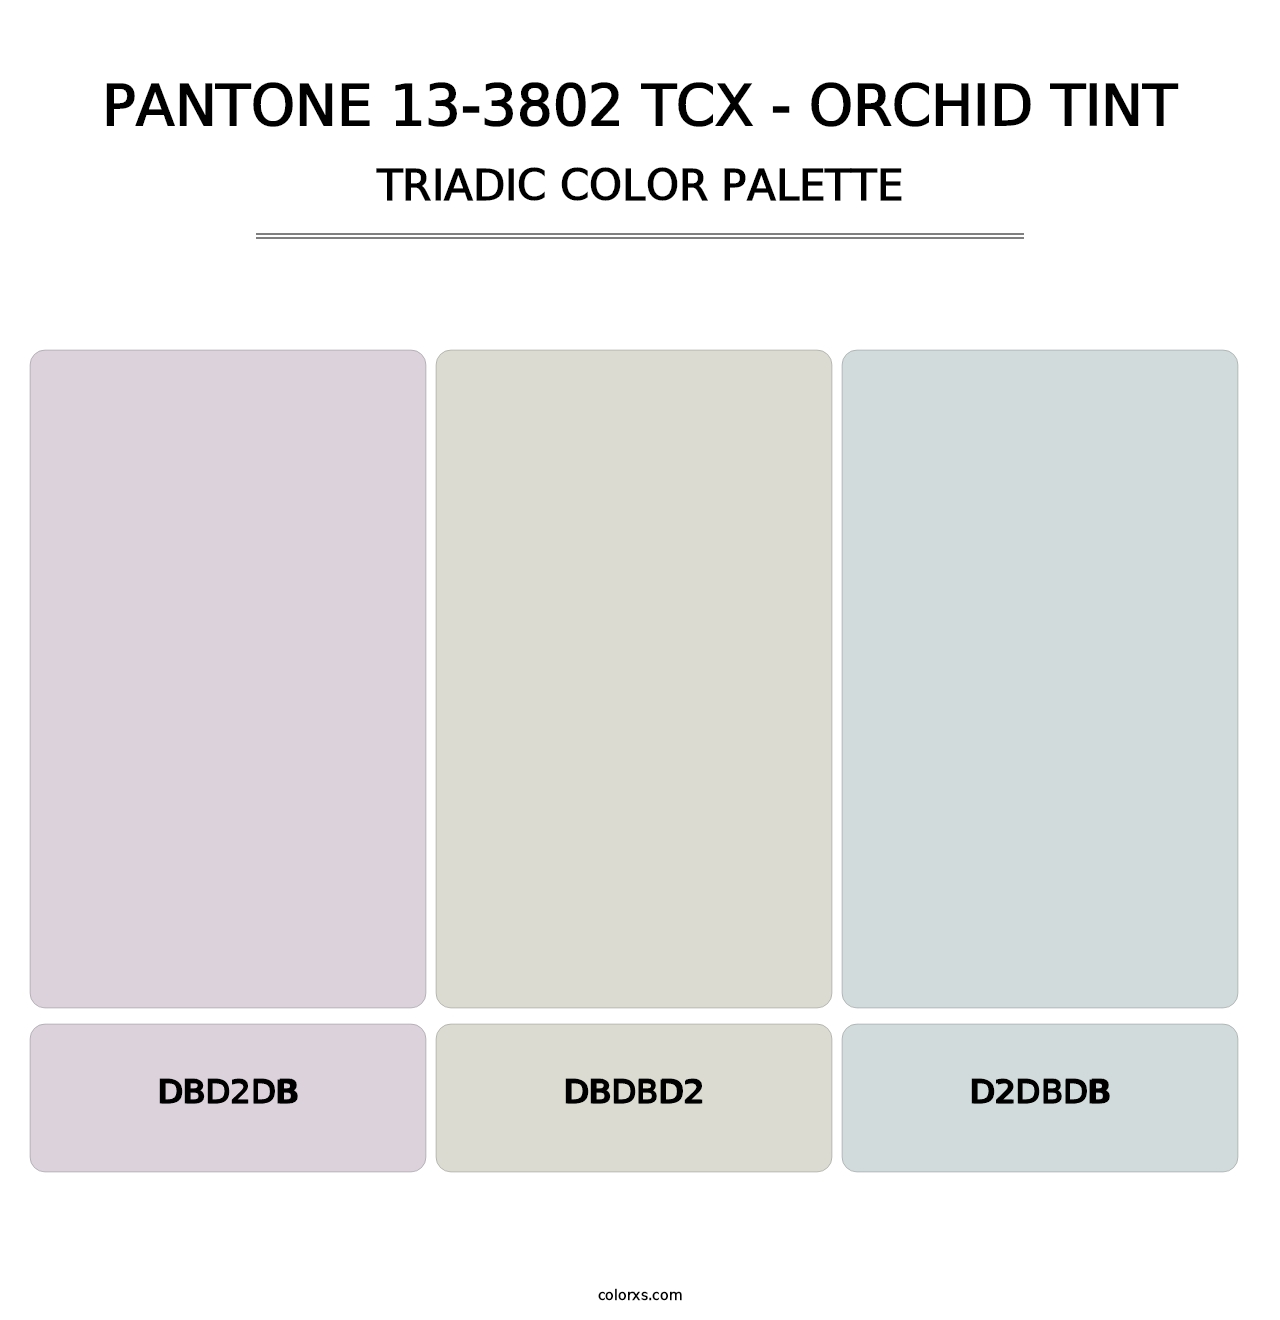 PANTONE 13-3802 TCX - Orchid Tint - Triadic Color Palette